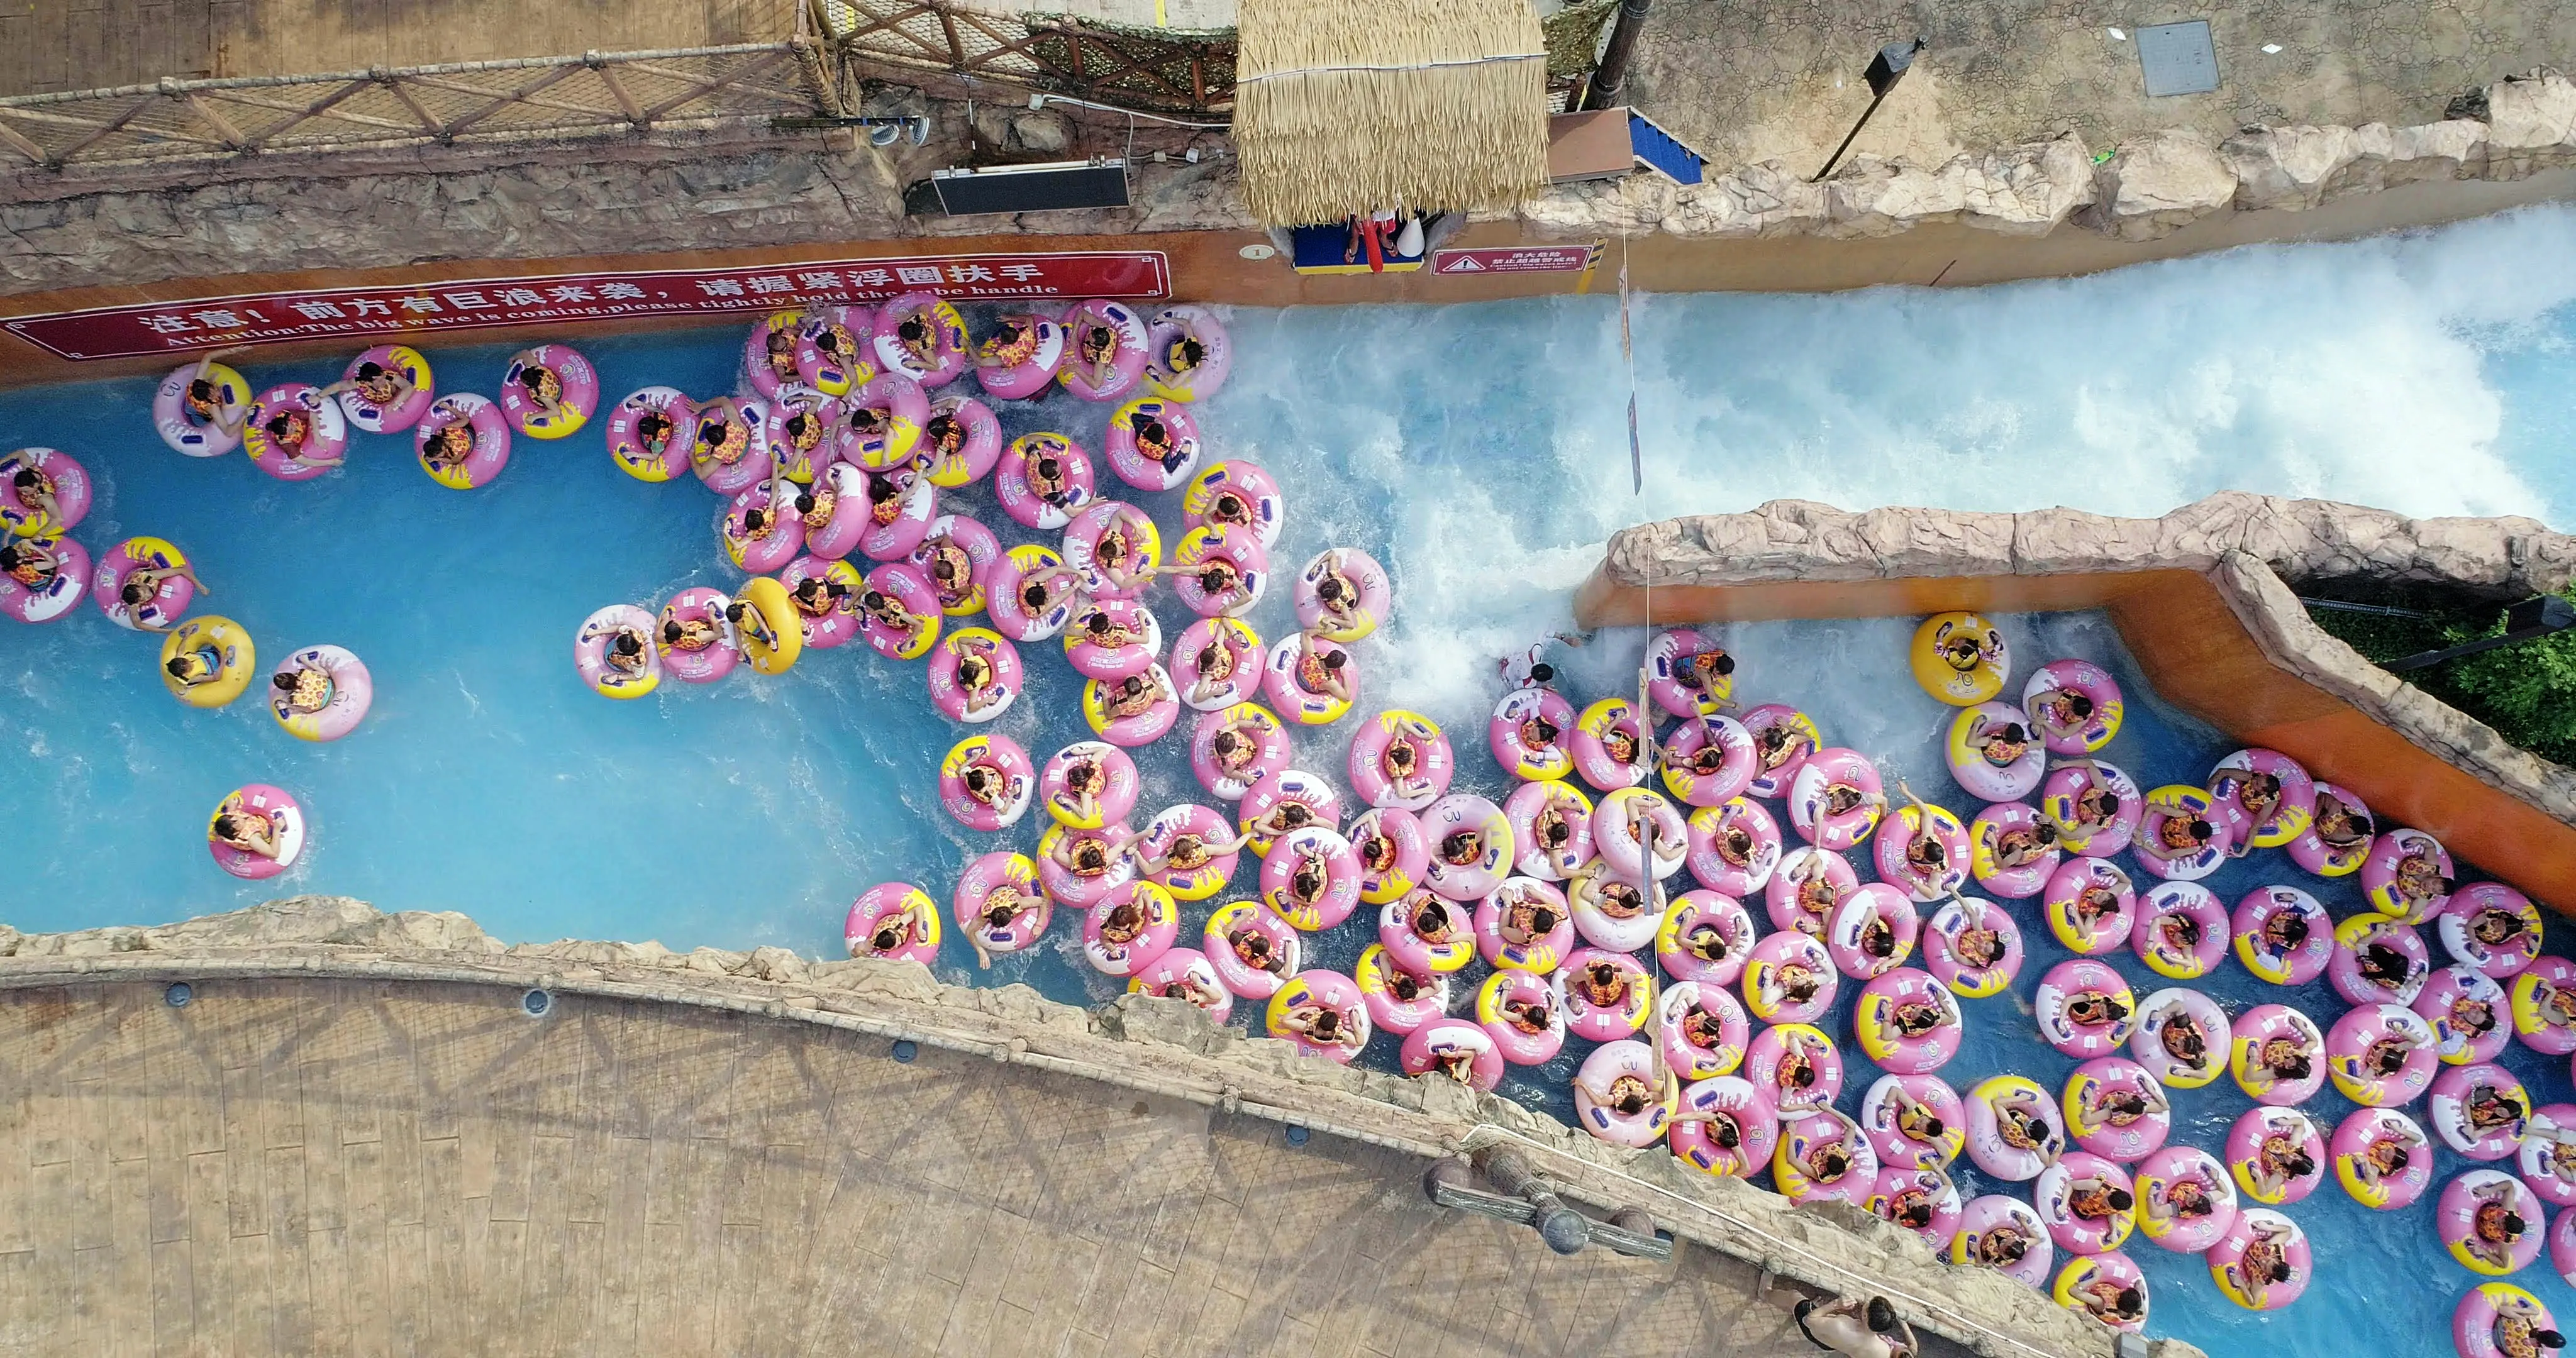 Cena do documentário Ascension. Imagem retangular e colorida. Nela, vemos de cima, um grupo enorme de pessoas, vestindo bóias rosas e amarelas, sendo levados pela correnteza de uma grande piscina de um parque aquático. O cenário é dia.